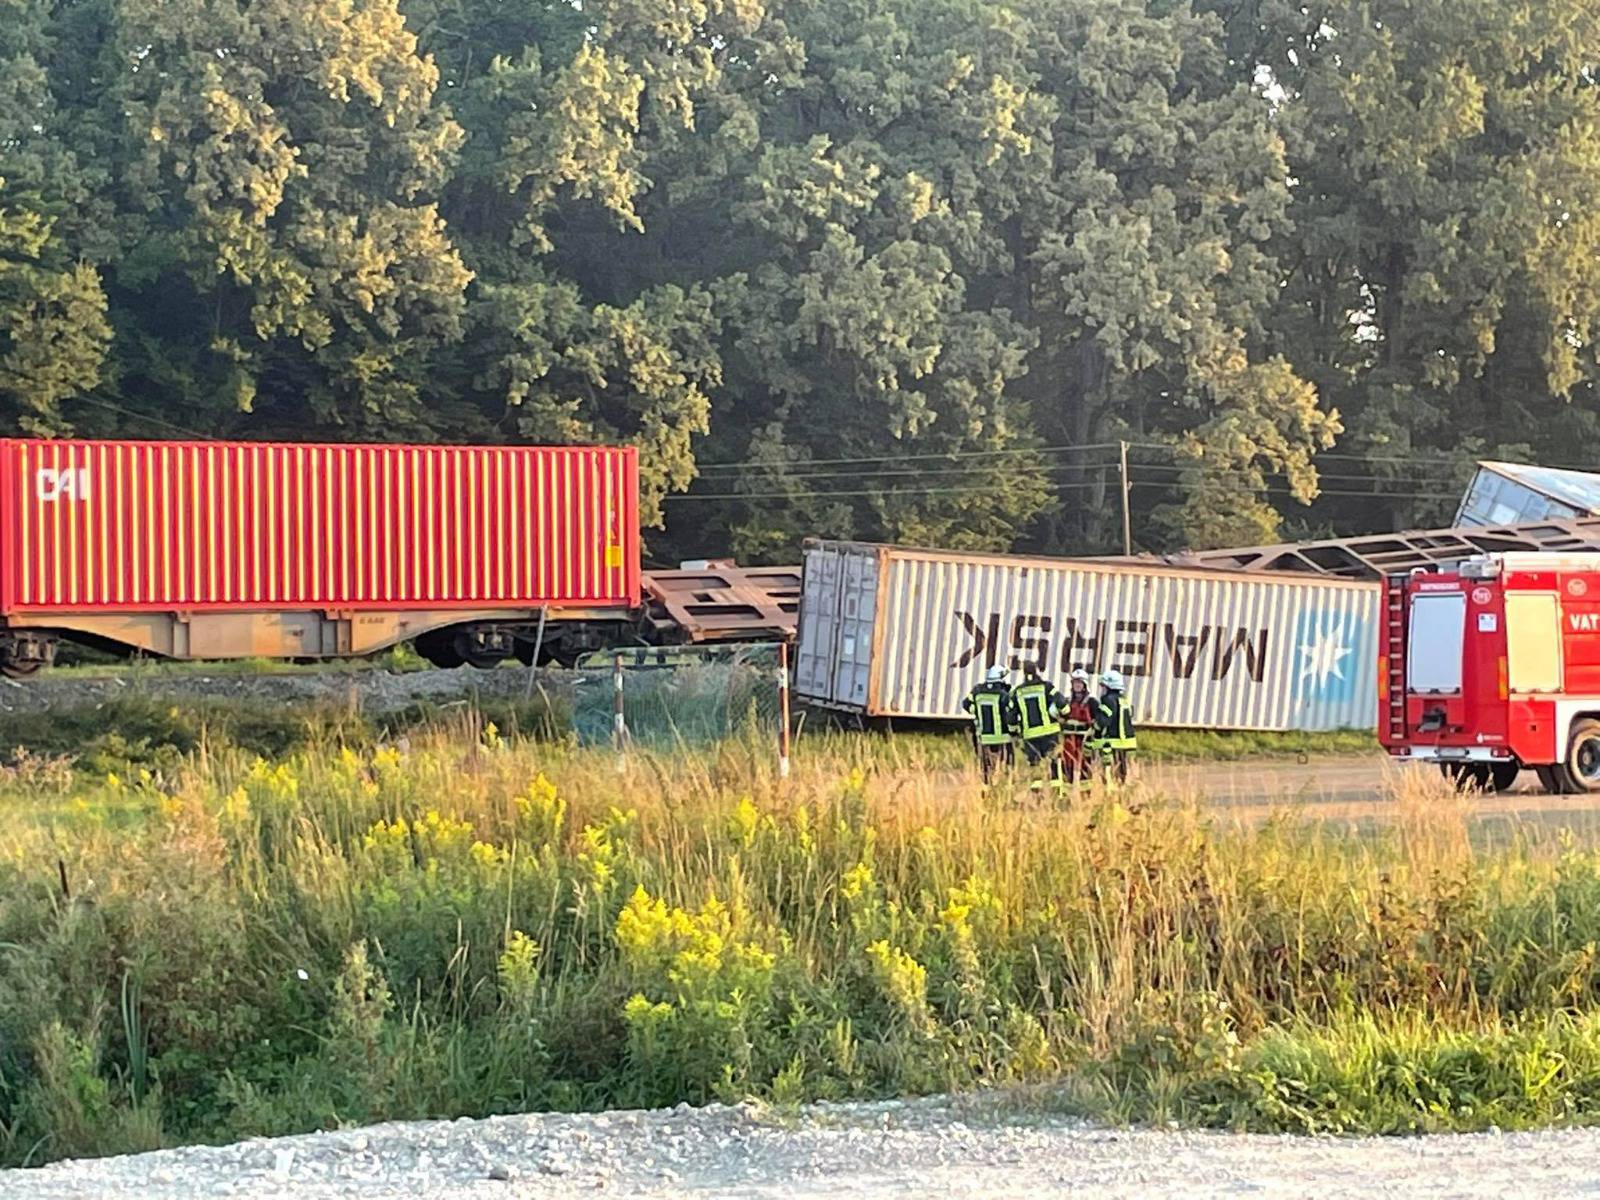 Vlakovi su se sudarili u blizini Križevaca, ozlijeđen strojovođa